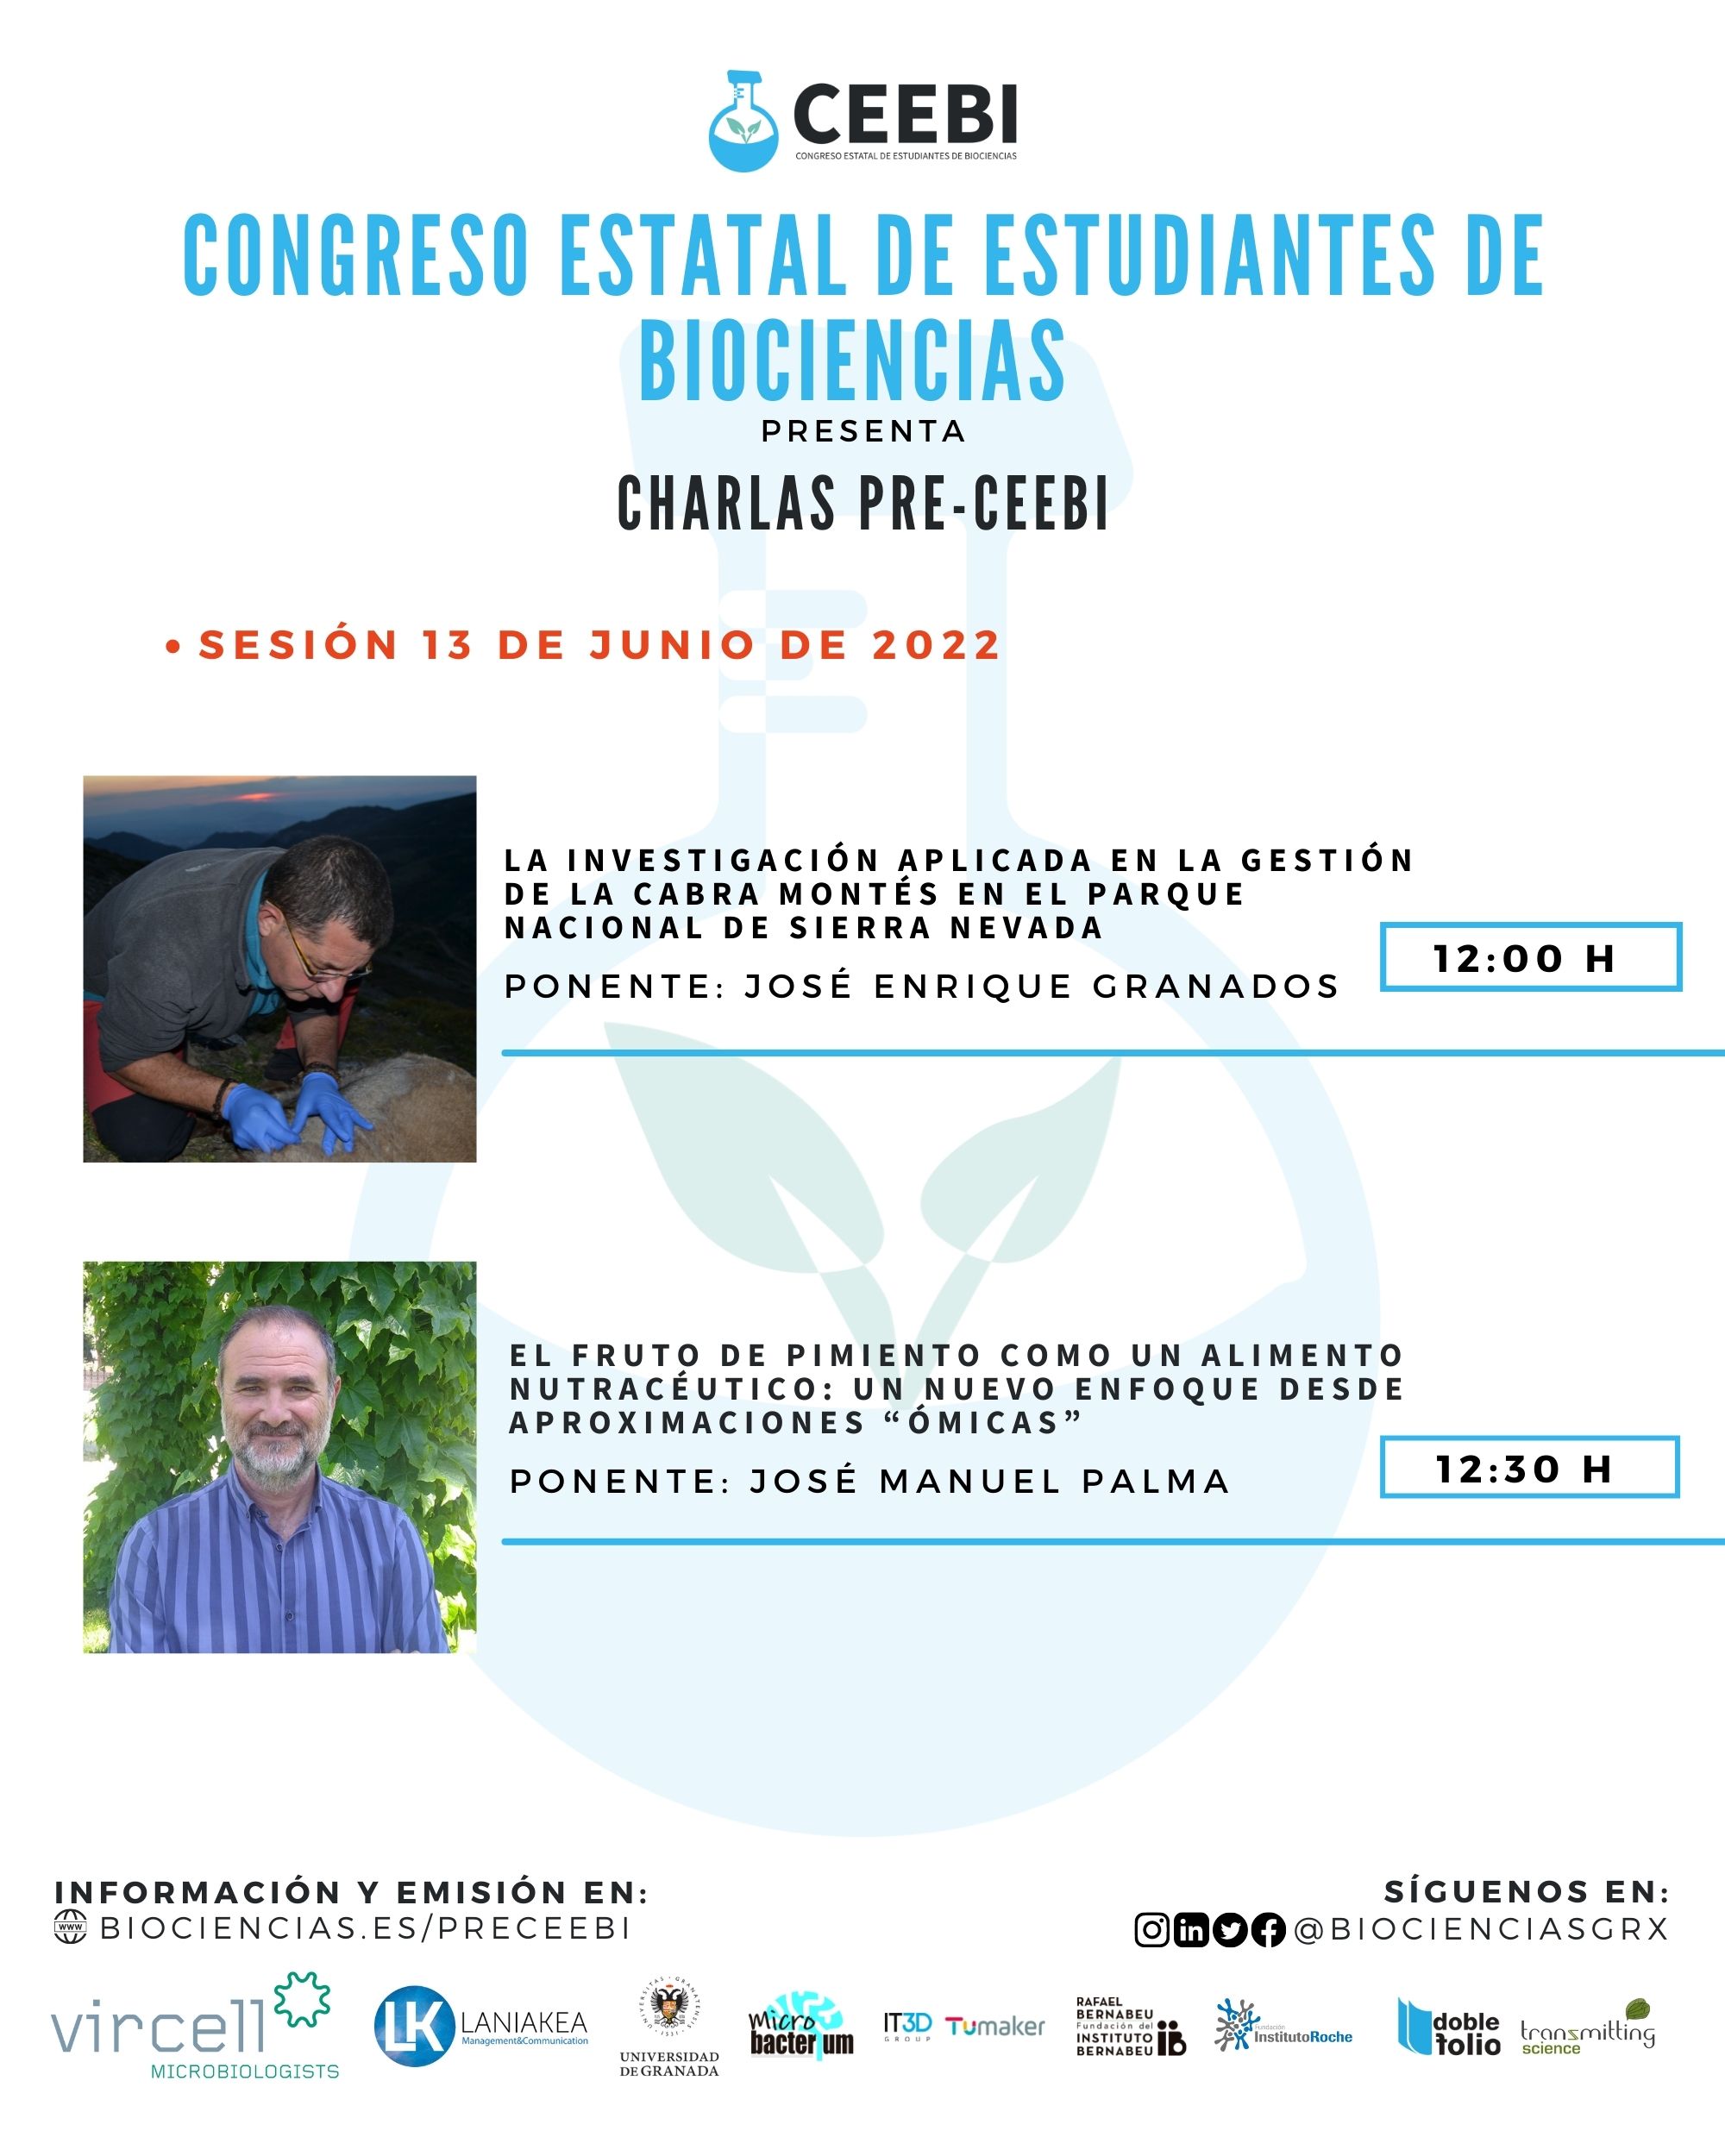 Sesión 15 | Charlas pre-CEEBI | José Enrique Granados y José Manuel Palma